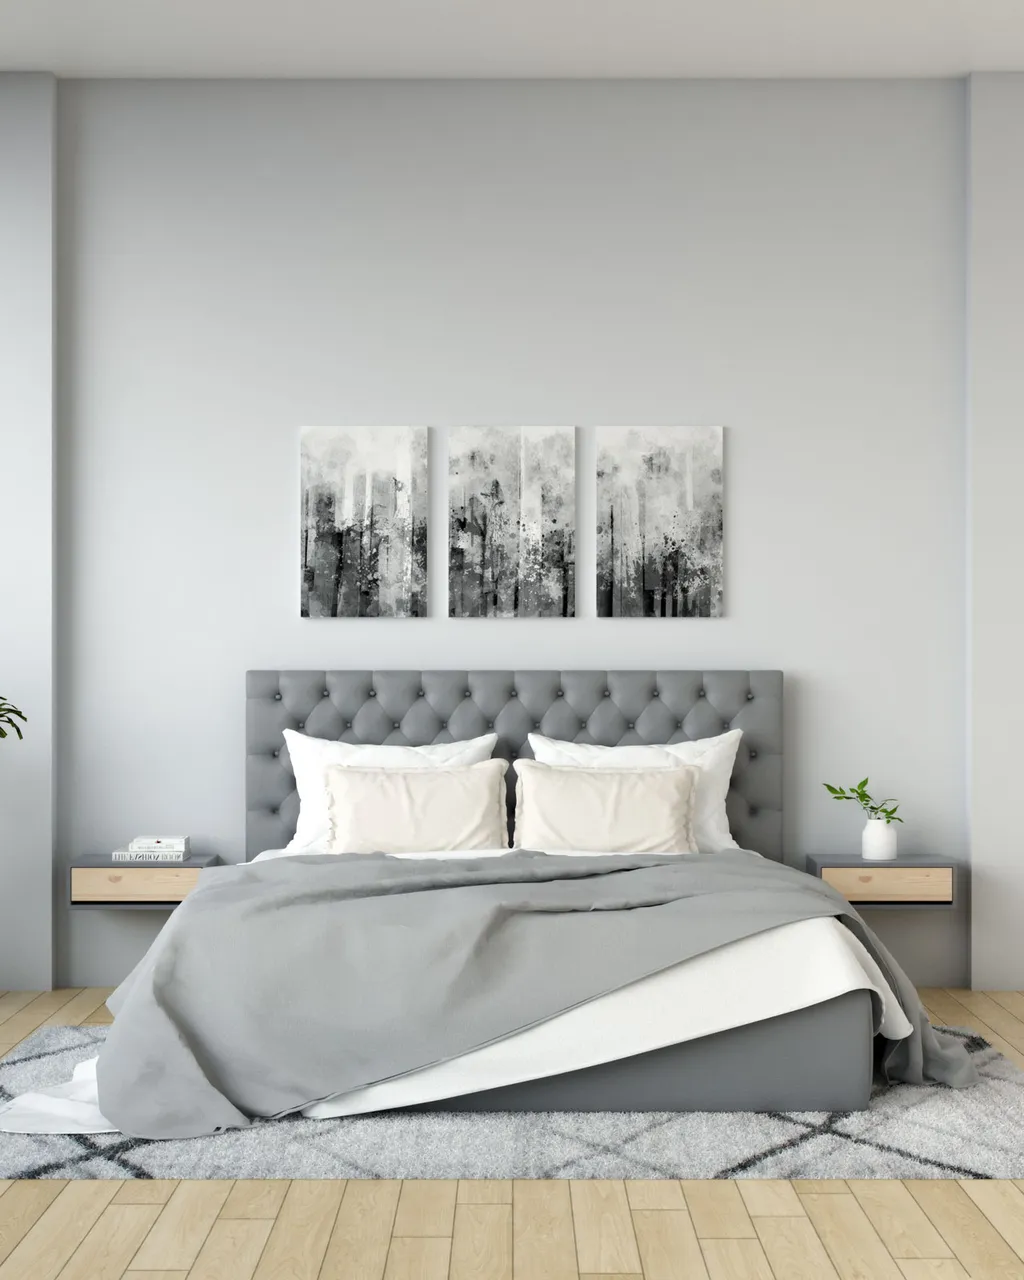 Sơn tường phòng ngủ màu xám trung tính, tối giản